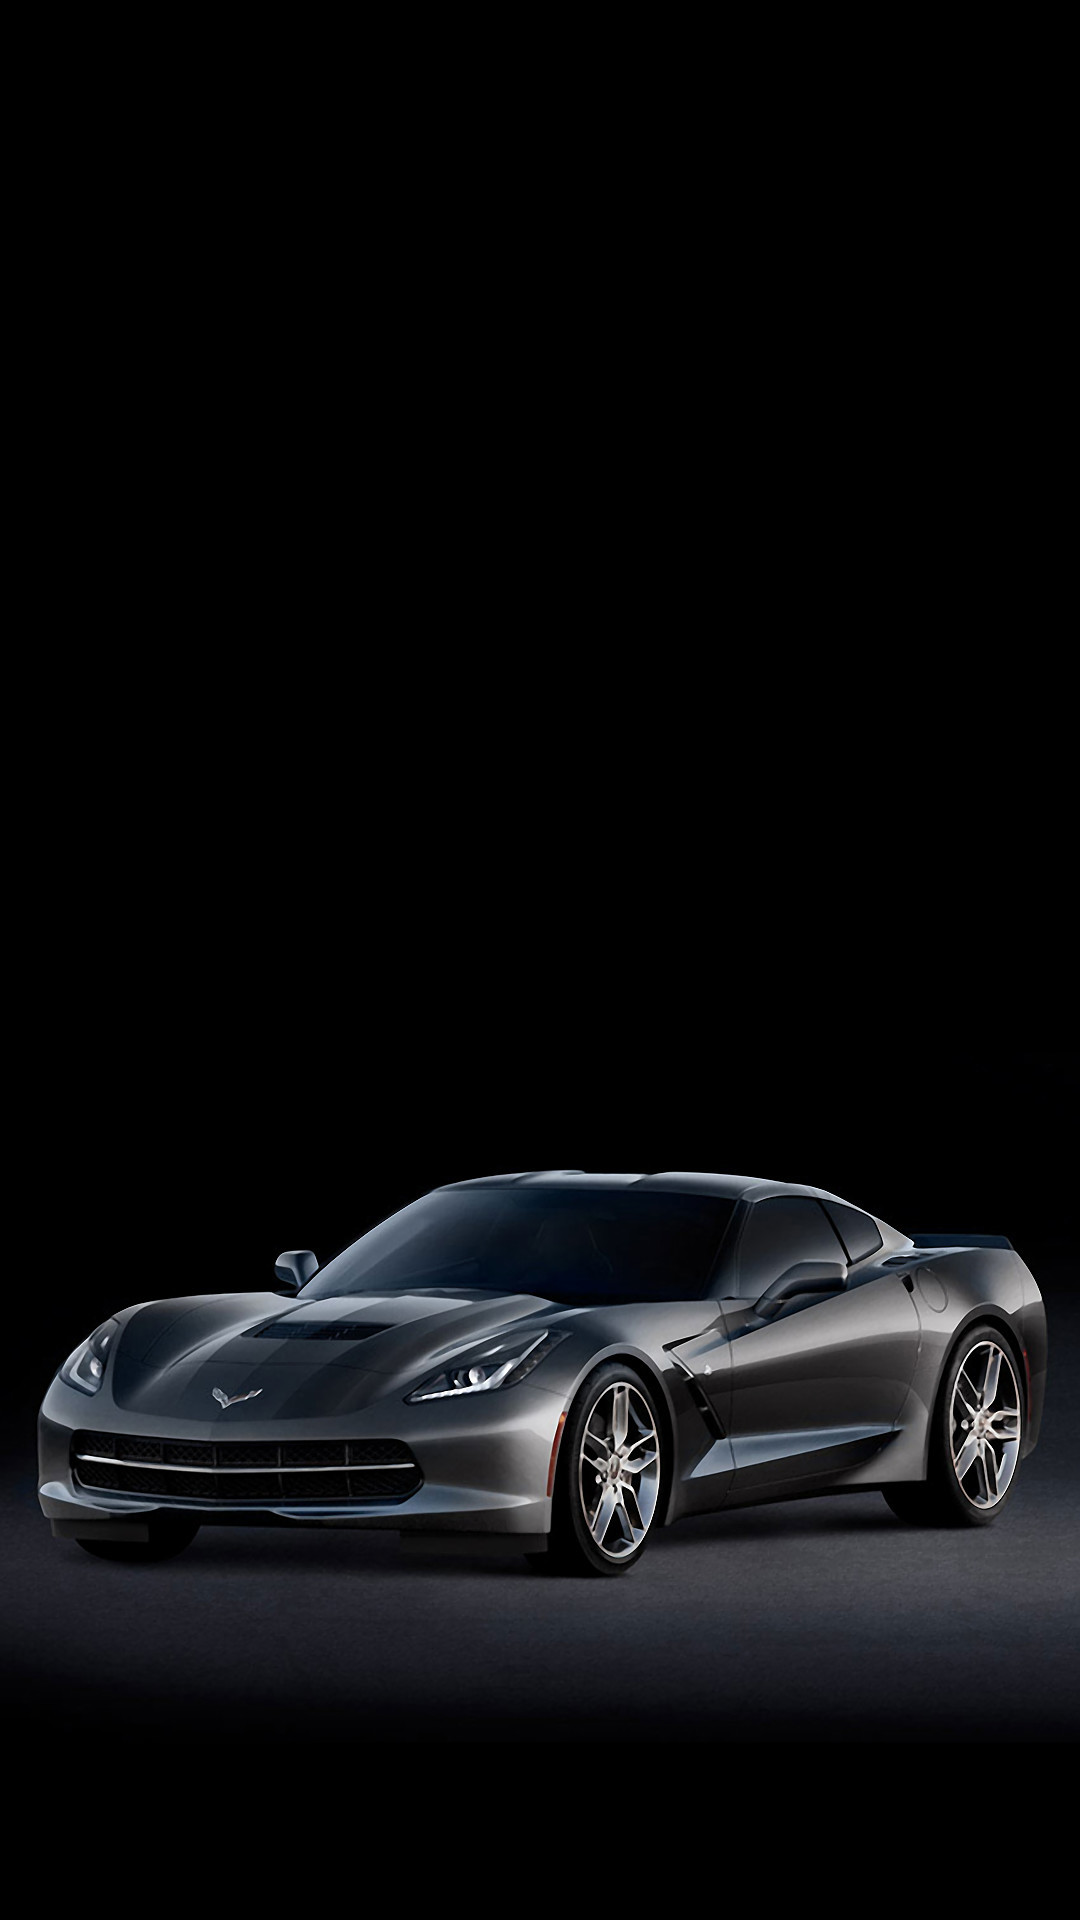 1080x1920 2048x1536 C5 corvette wide fenders only pics!! - CorvetteForum - Chevrolet  Corvette Forum Discussion | Corvettes | Pinterest | Corvette, Chevrolet  Corvette ...